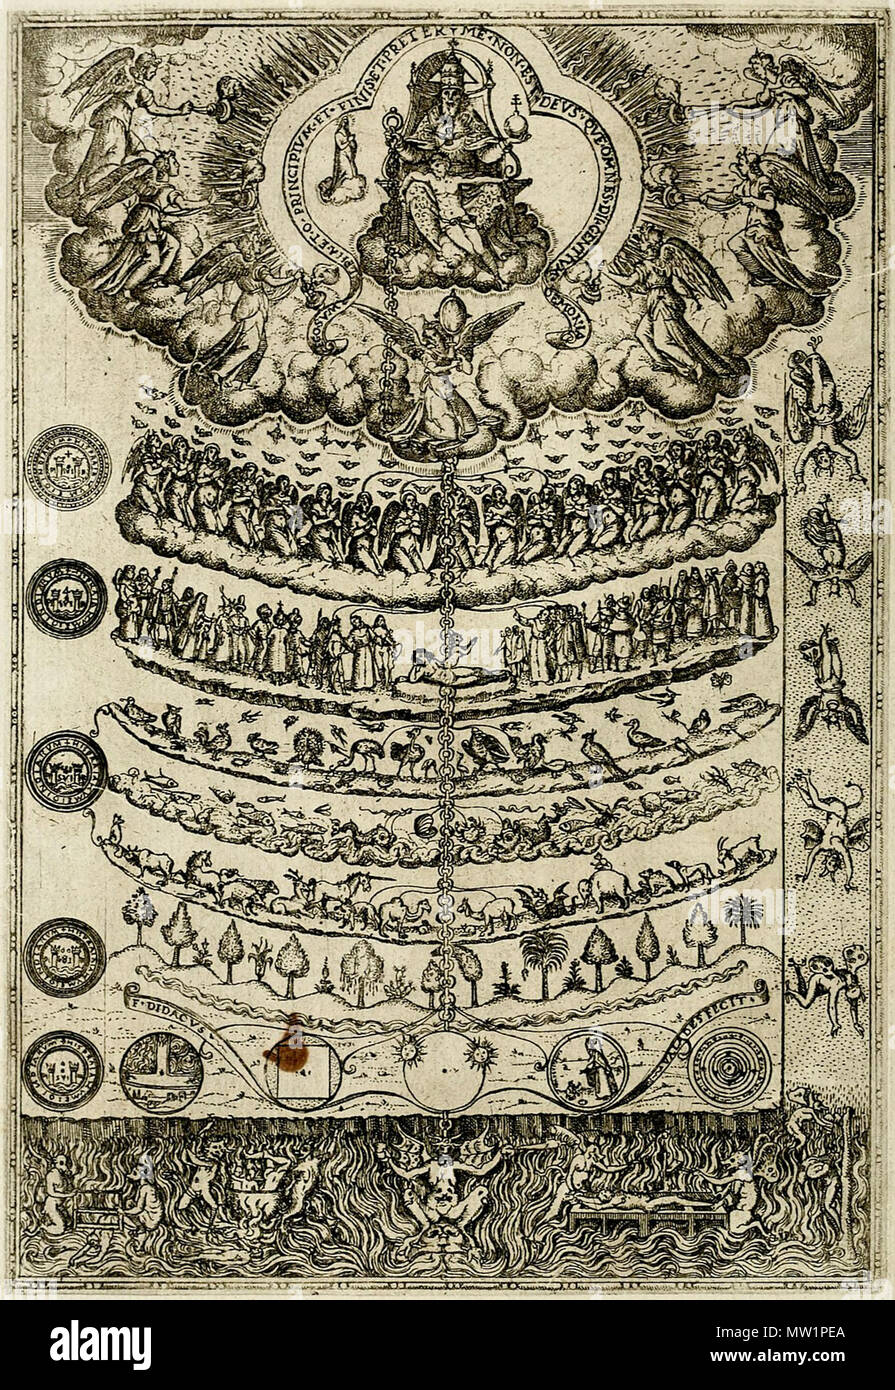 Gran Cadena del ser' Desde 'Rhetorica christiana et orandi concionandi ad  usum acomodar…' de Diego Valadés (1533-1582), publicado en 1579. El grabado  muestra la jerarquía de toda la vida, desde la parte